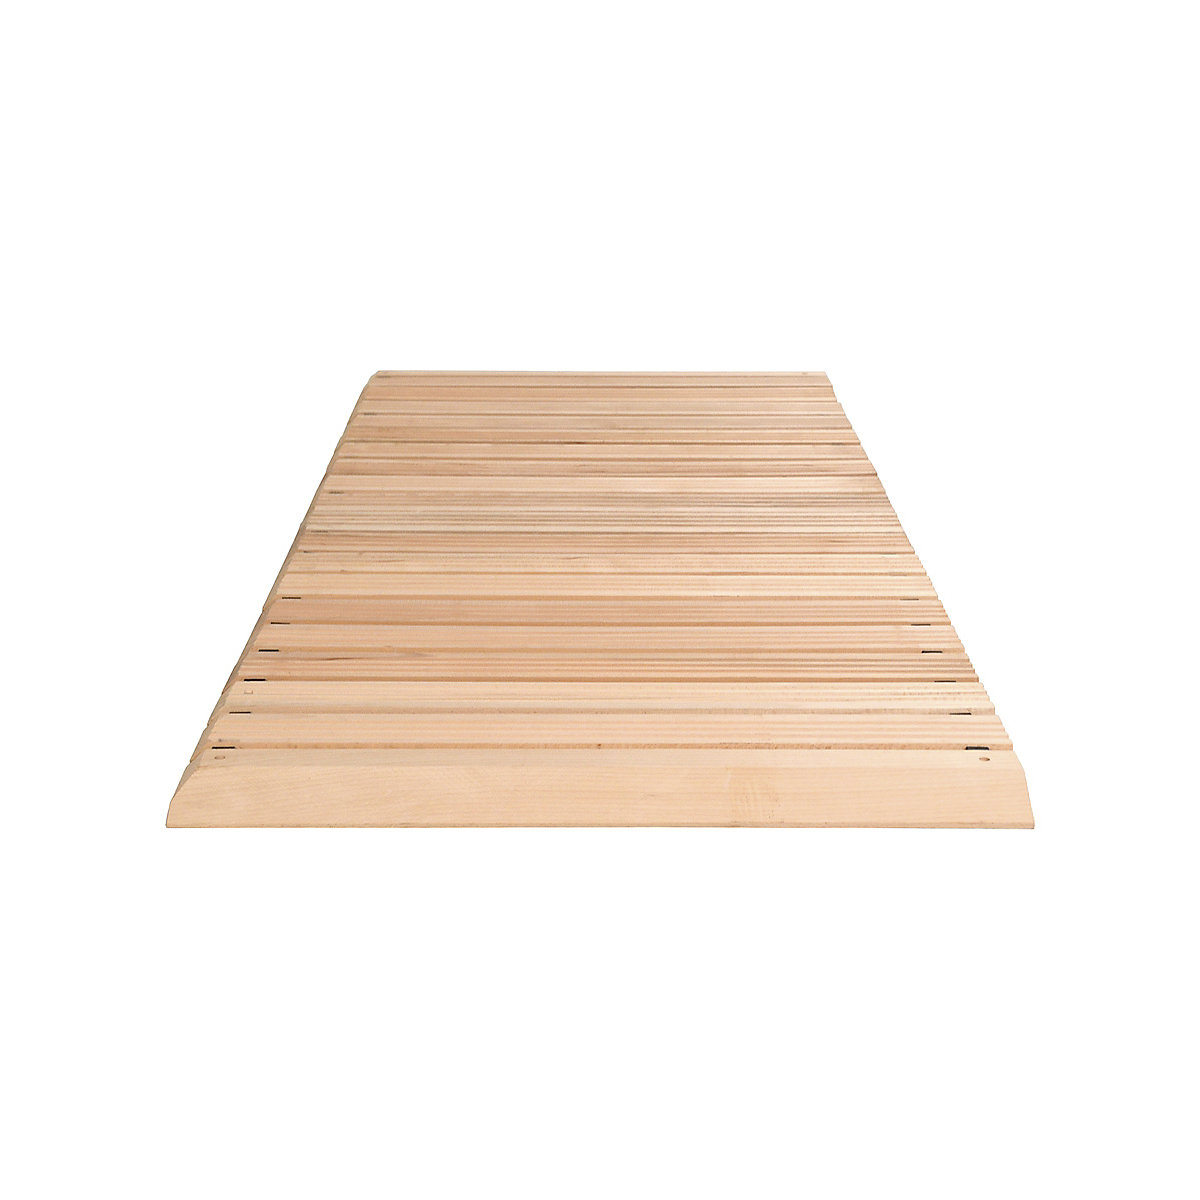 Holzlaufrost, pro lfd. m, mit Anschrägung an 3 Seiten, Breite 800 mm